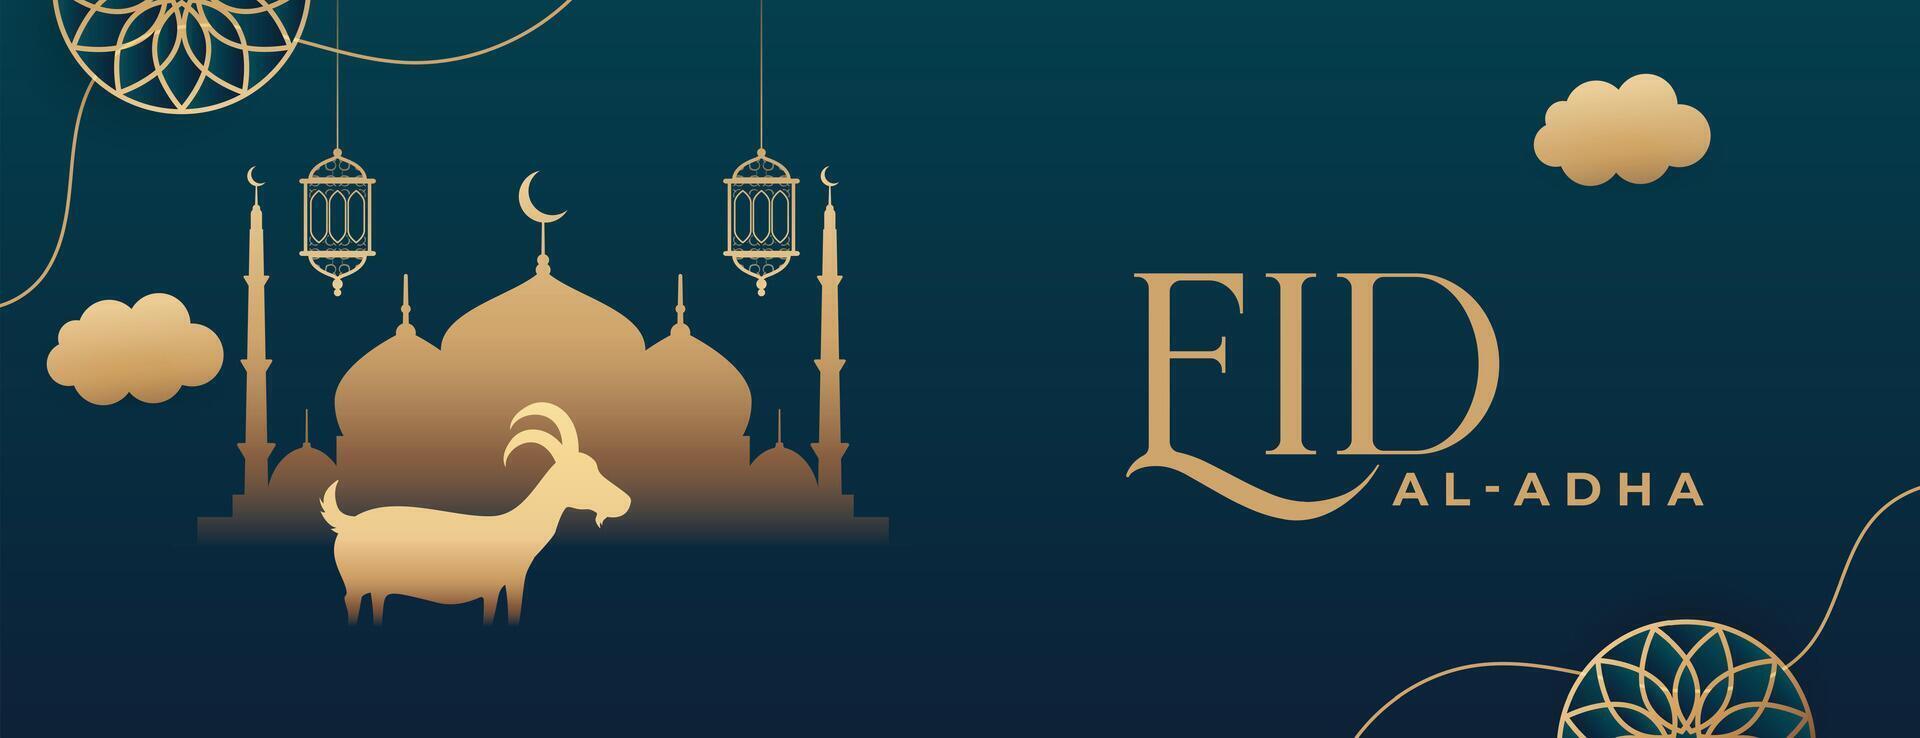 eid al adha Feier islamisch Fanoos mit Ziege und Moschee Banner vektor